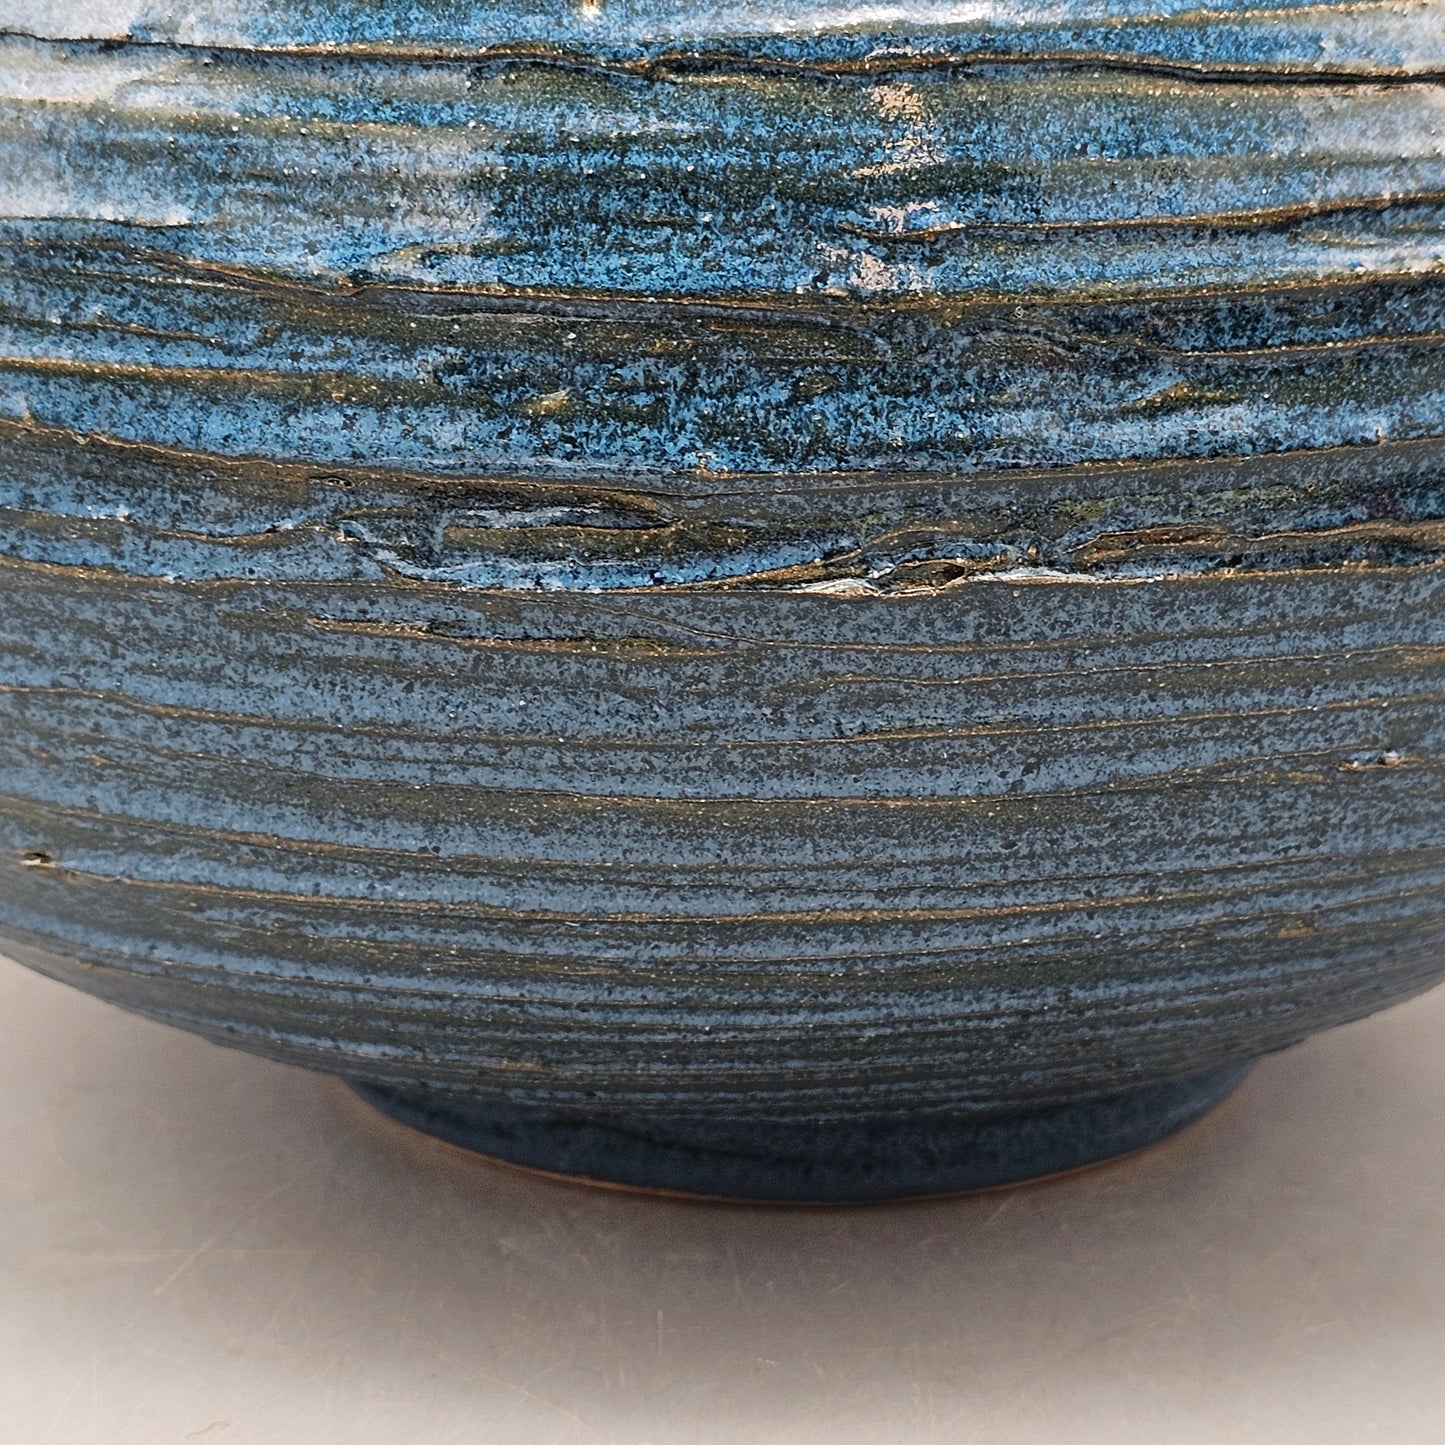 Large Studio Pottery Blue Vessel - Aldo Londi Style